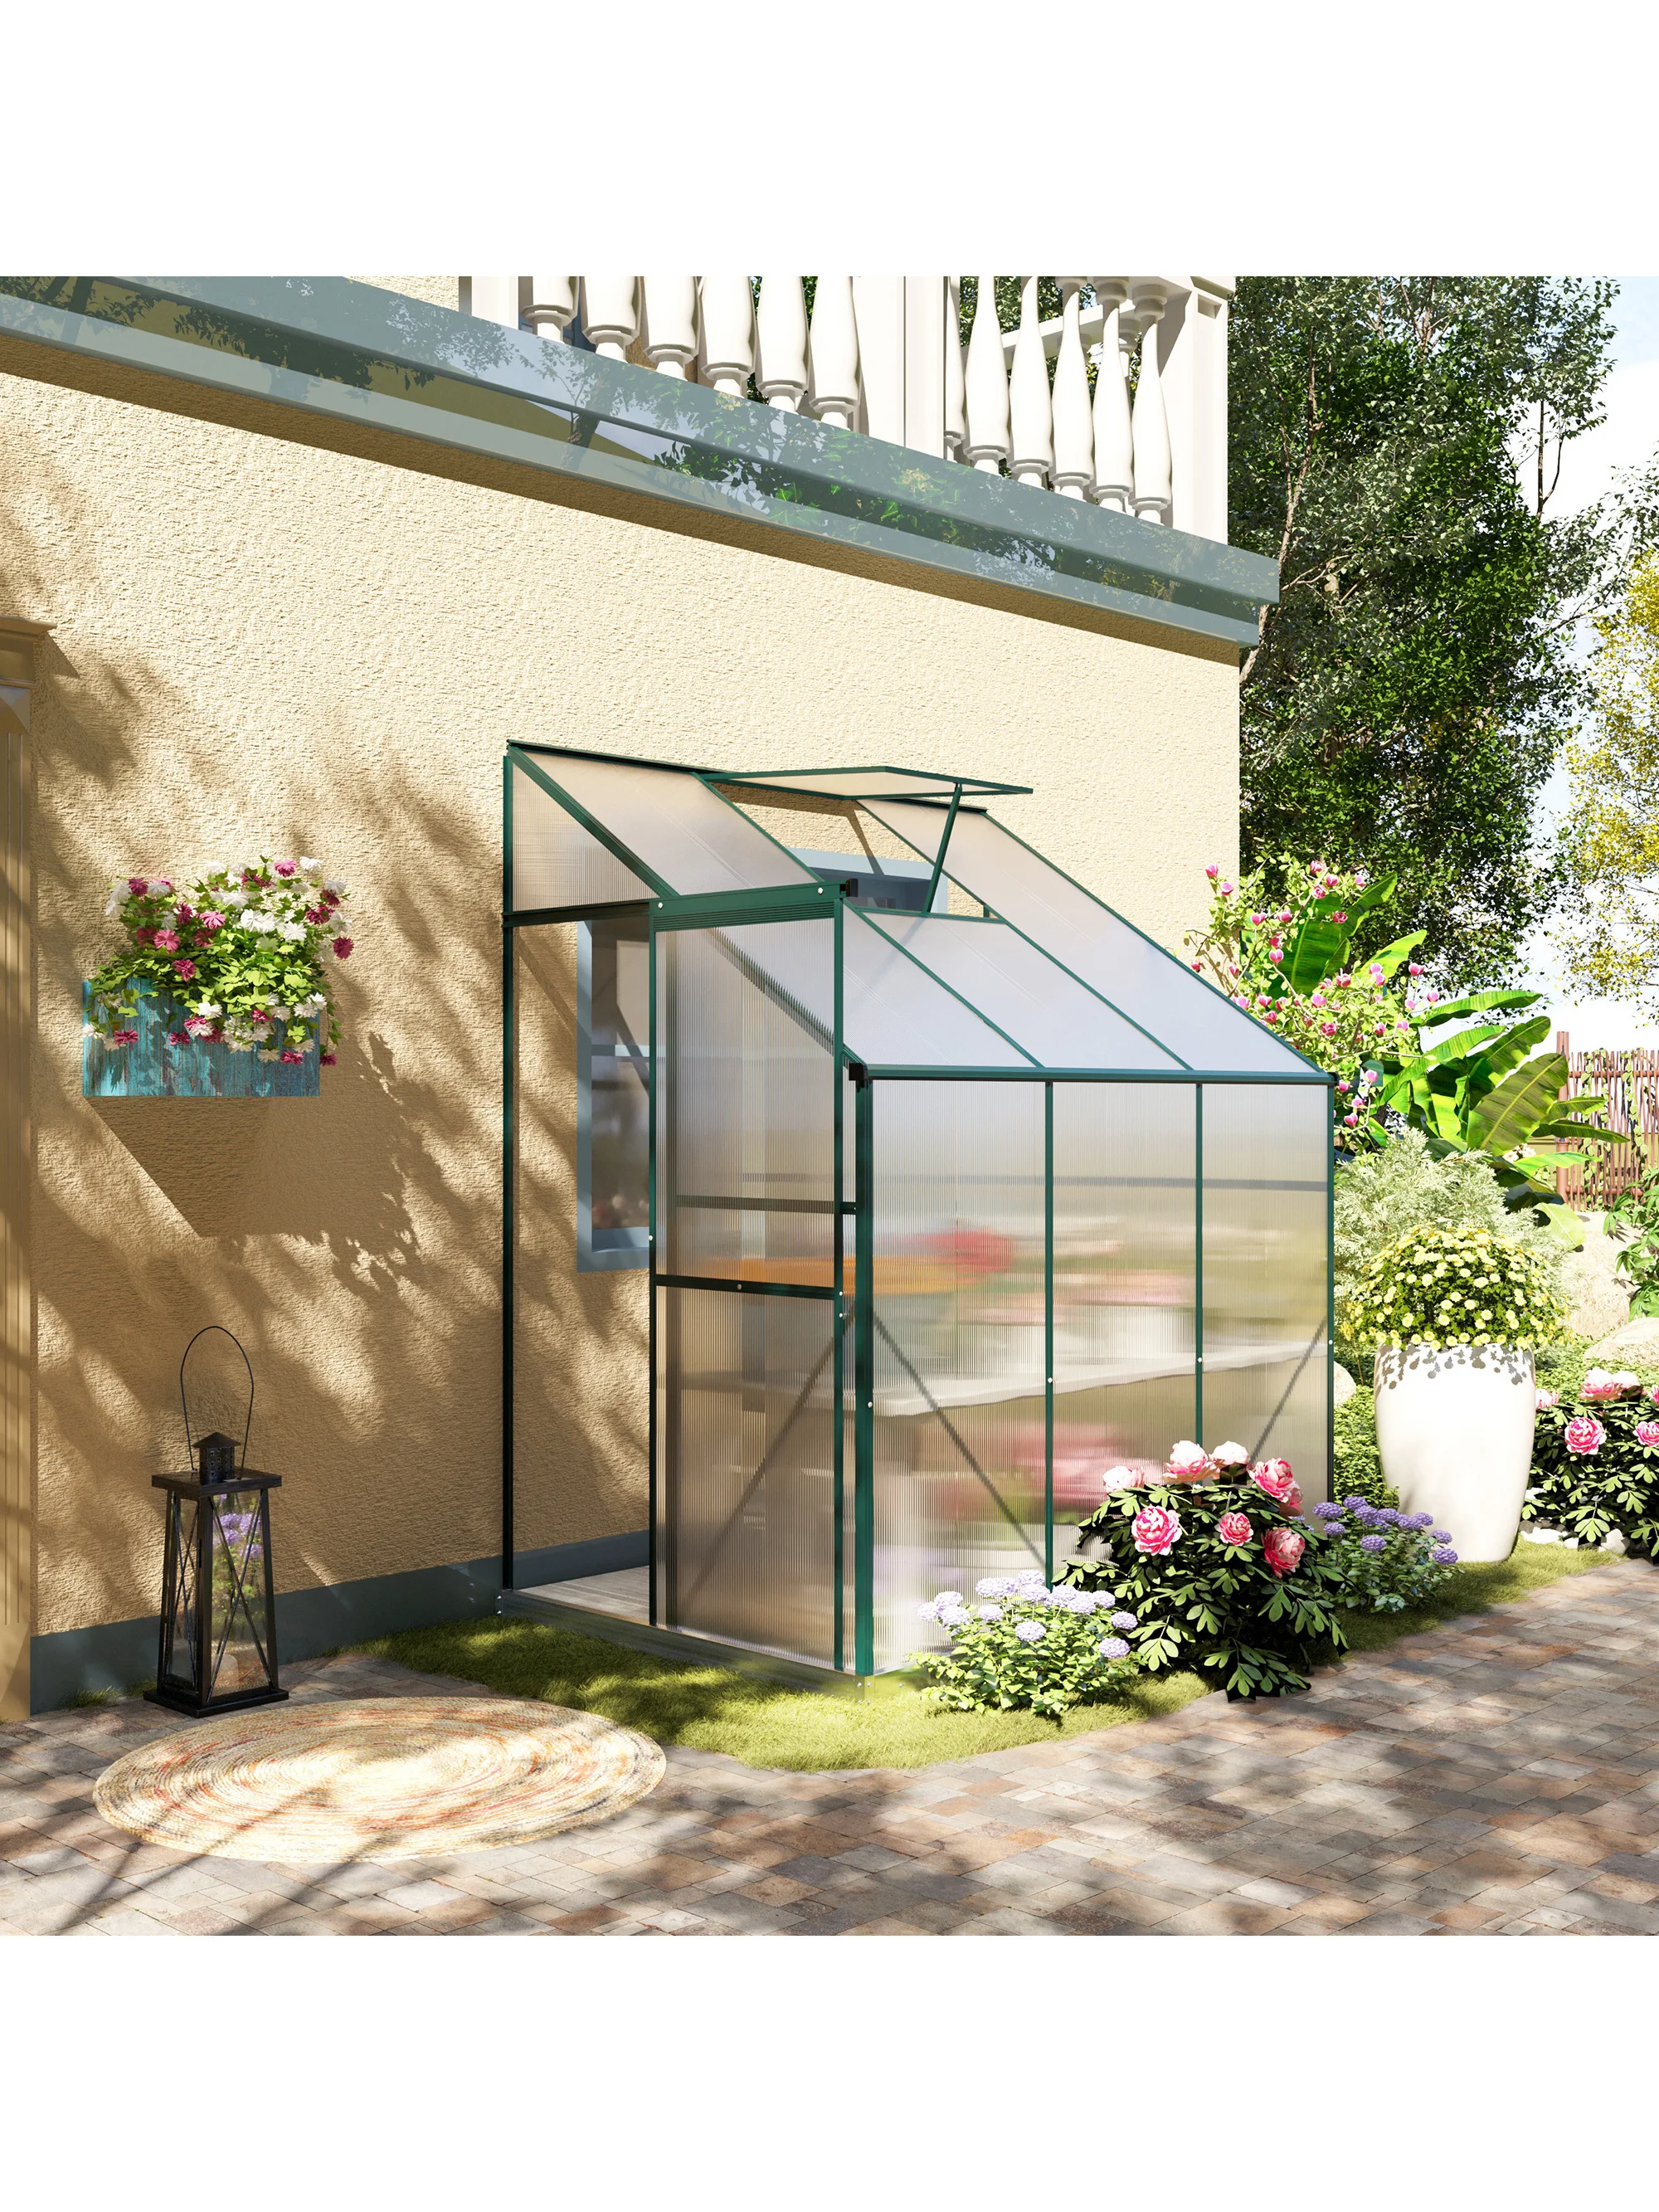 

Хобби-теплица 6 'x 4' x 7 ', набор для горячего дома из поликарбоната с алюминиевой рамой, раздвижная дверь, вентиляционное отверстие для крыши, зеленая